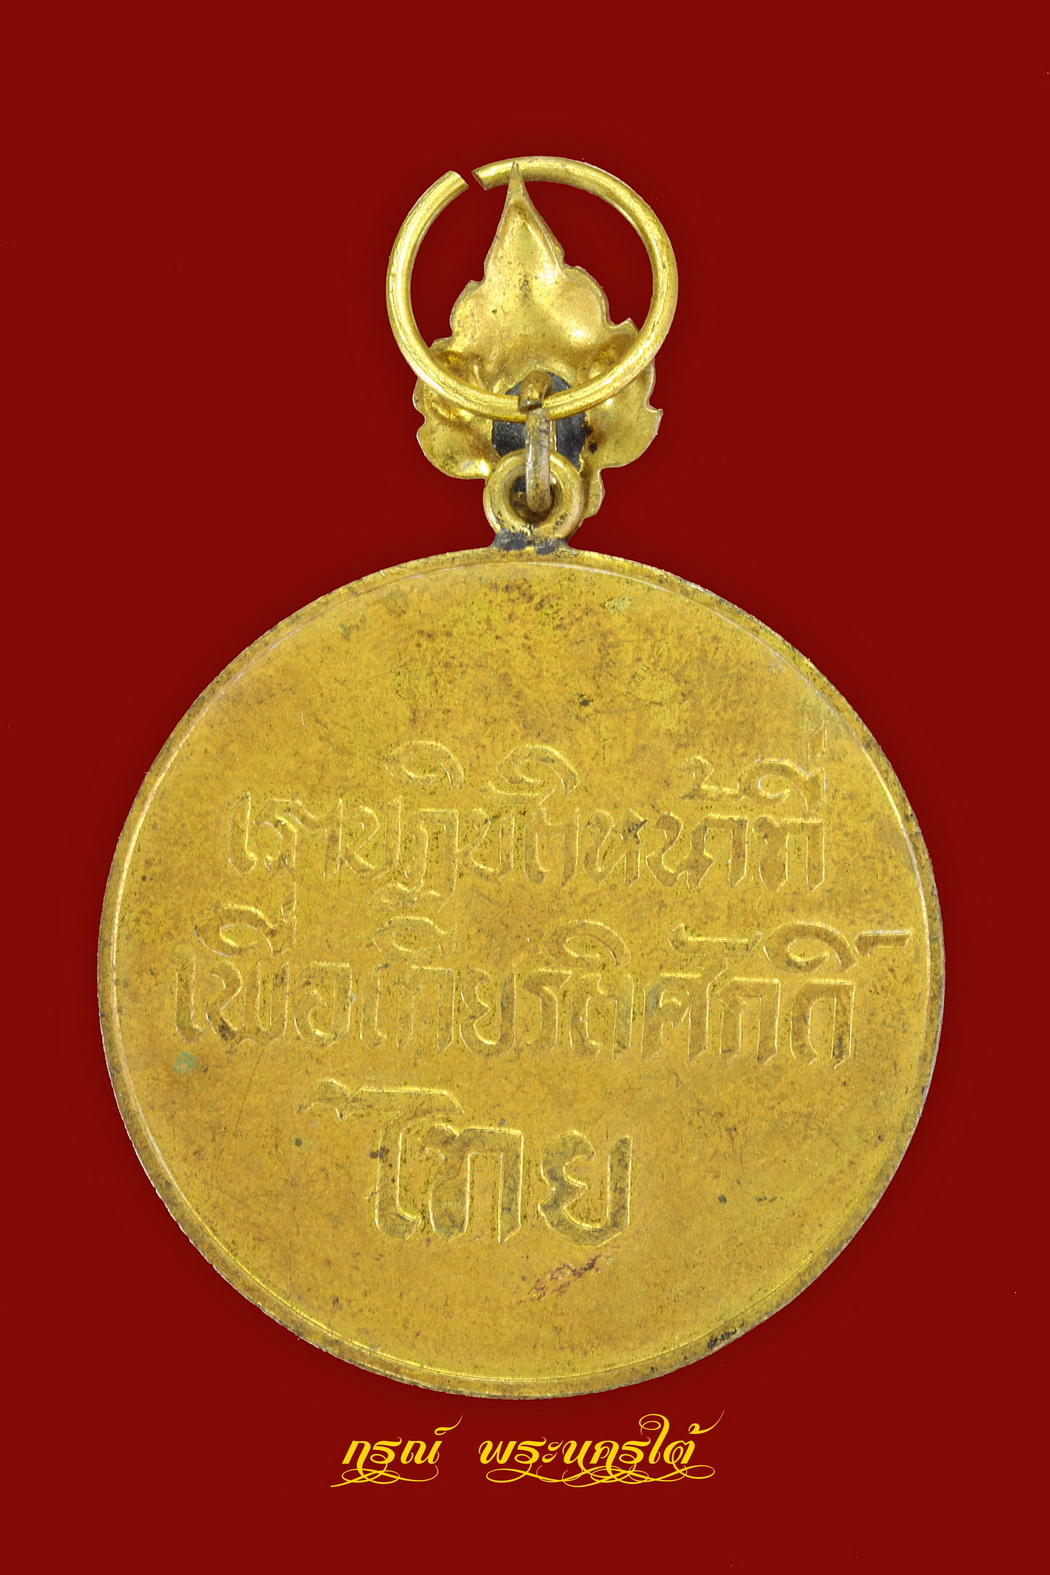 เหรียญกู้ชาติ เราปฏิบัติหน้าที่เพื่อเกียรติศักดิ์ไทย